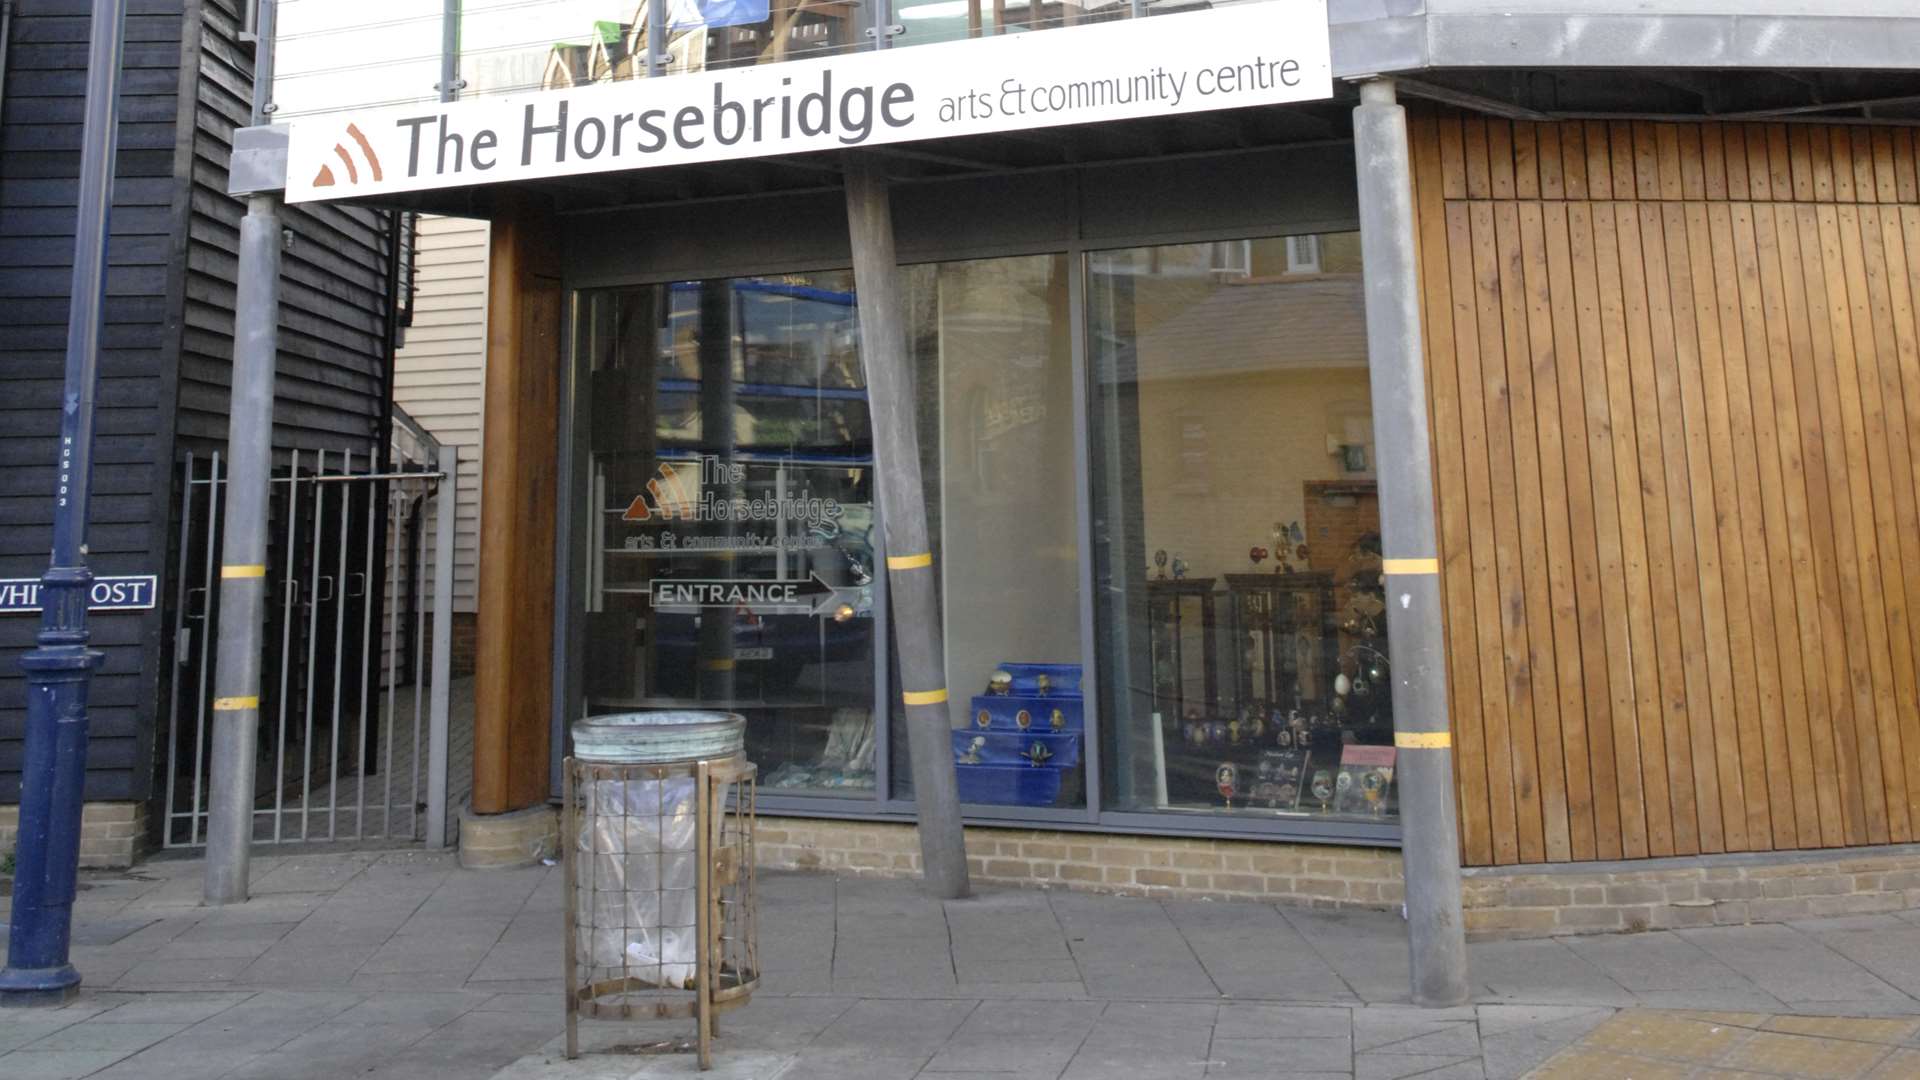 The Horsebridge Centre, Whitstable